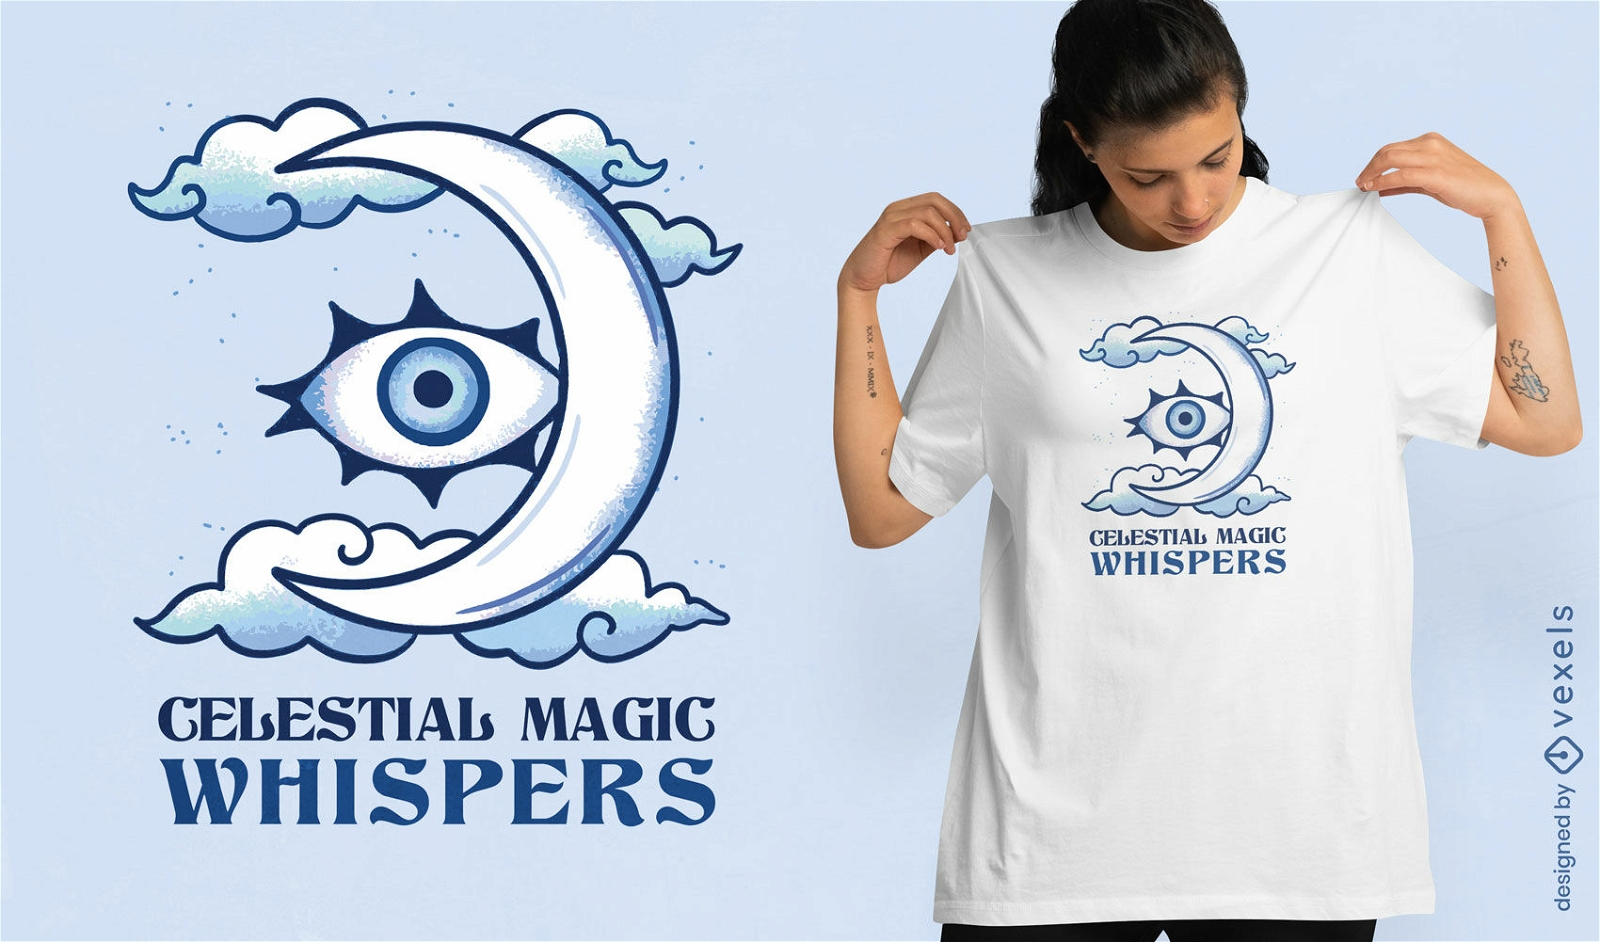 Celestial magic whispers t-shirt design